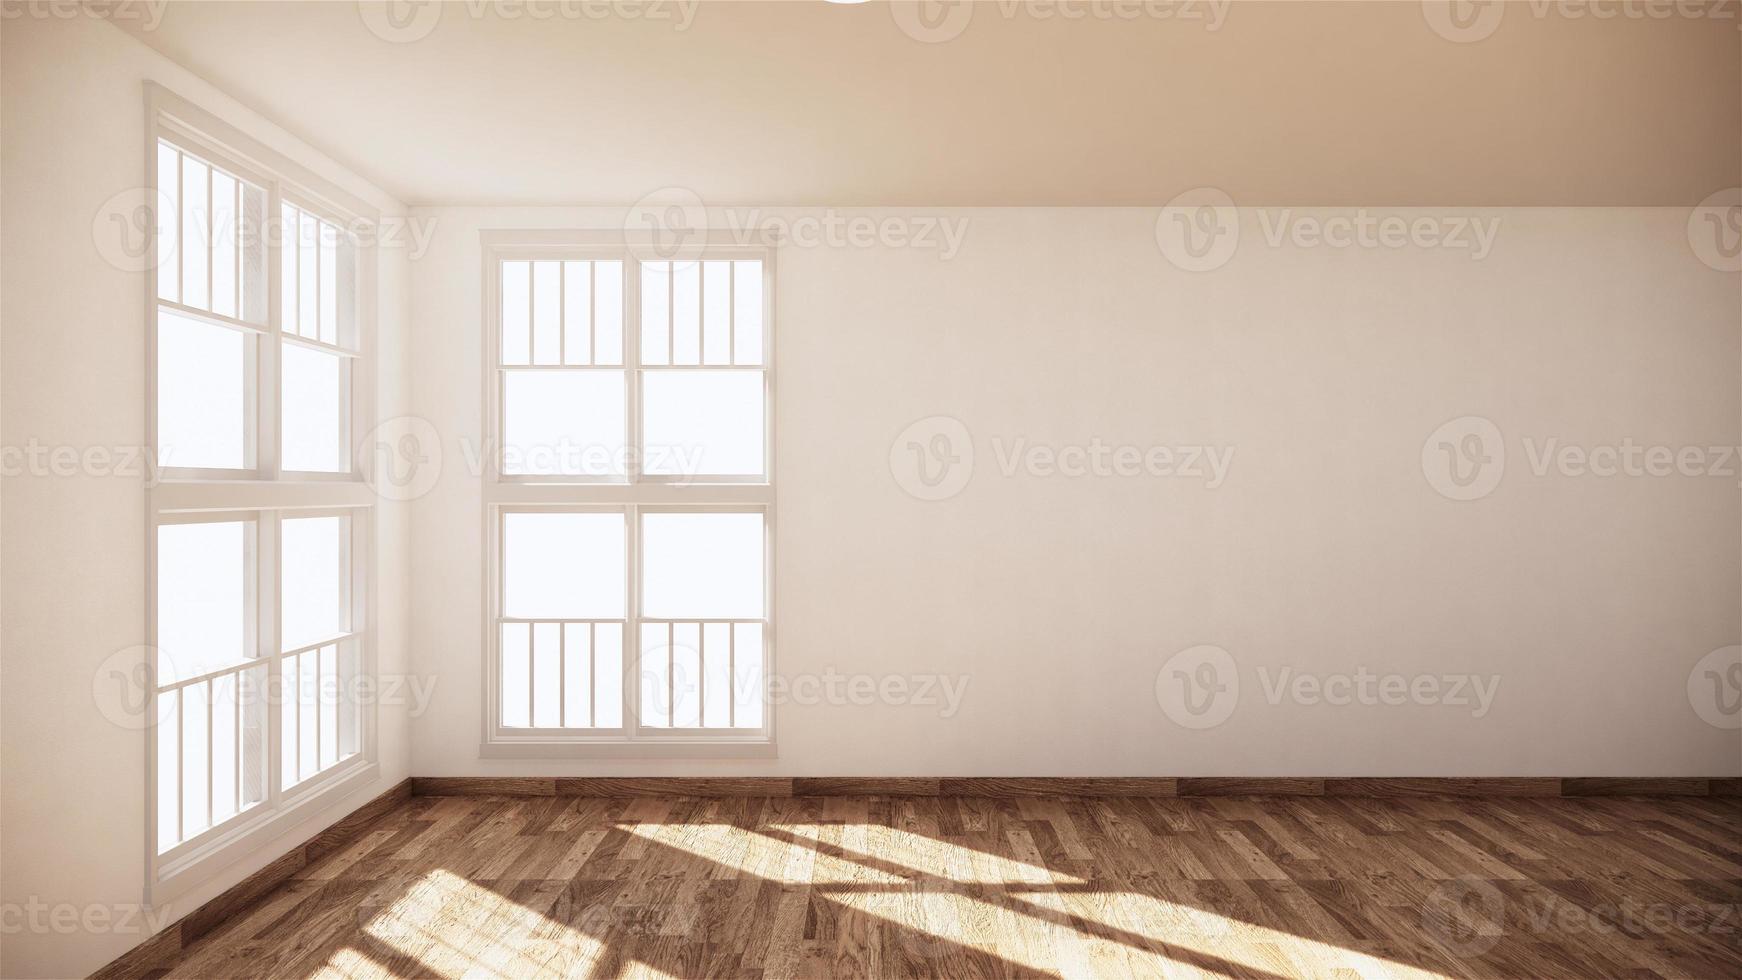 salle vide blanche sur plancher en bois design d'intérieur. rendu 3D photo